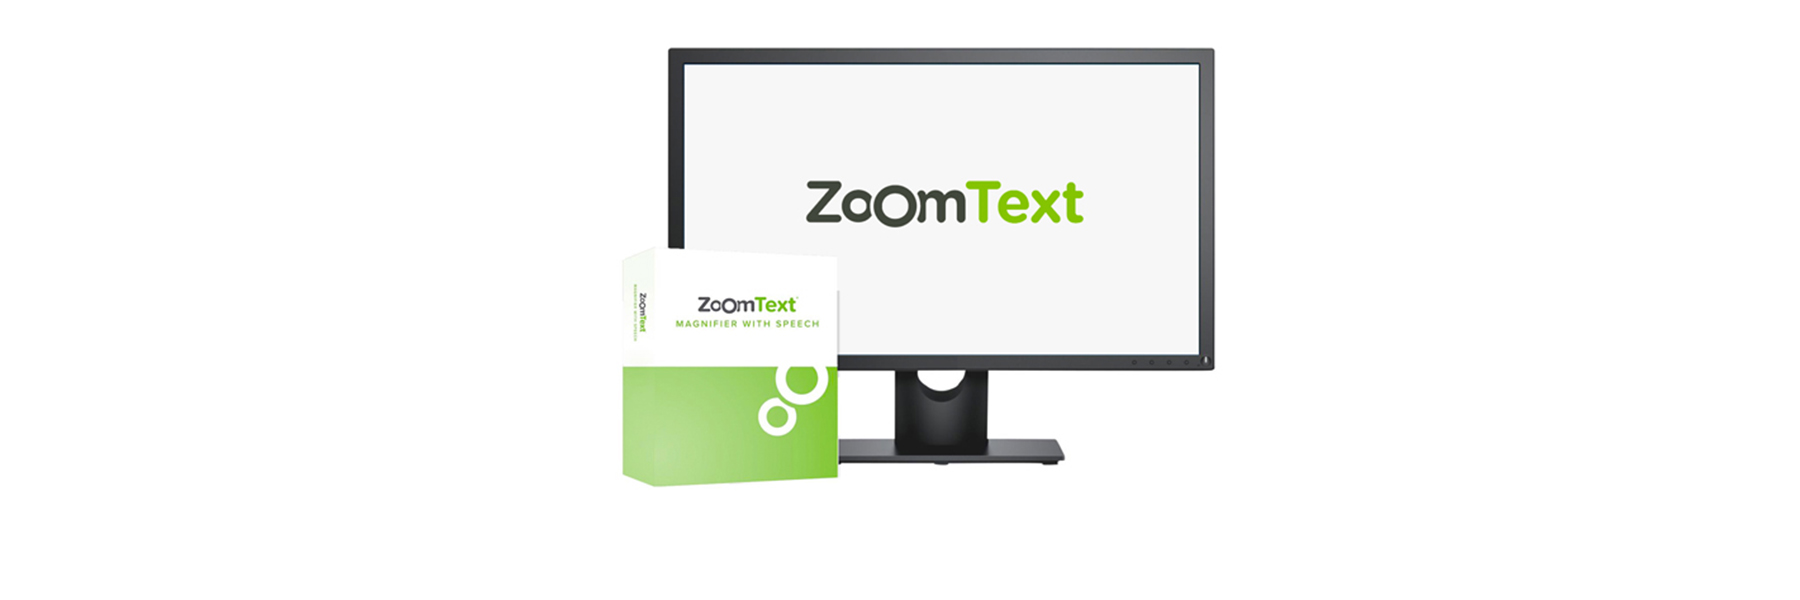 Abbildung des ZoomText Logos